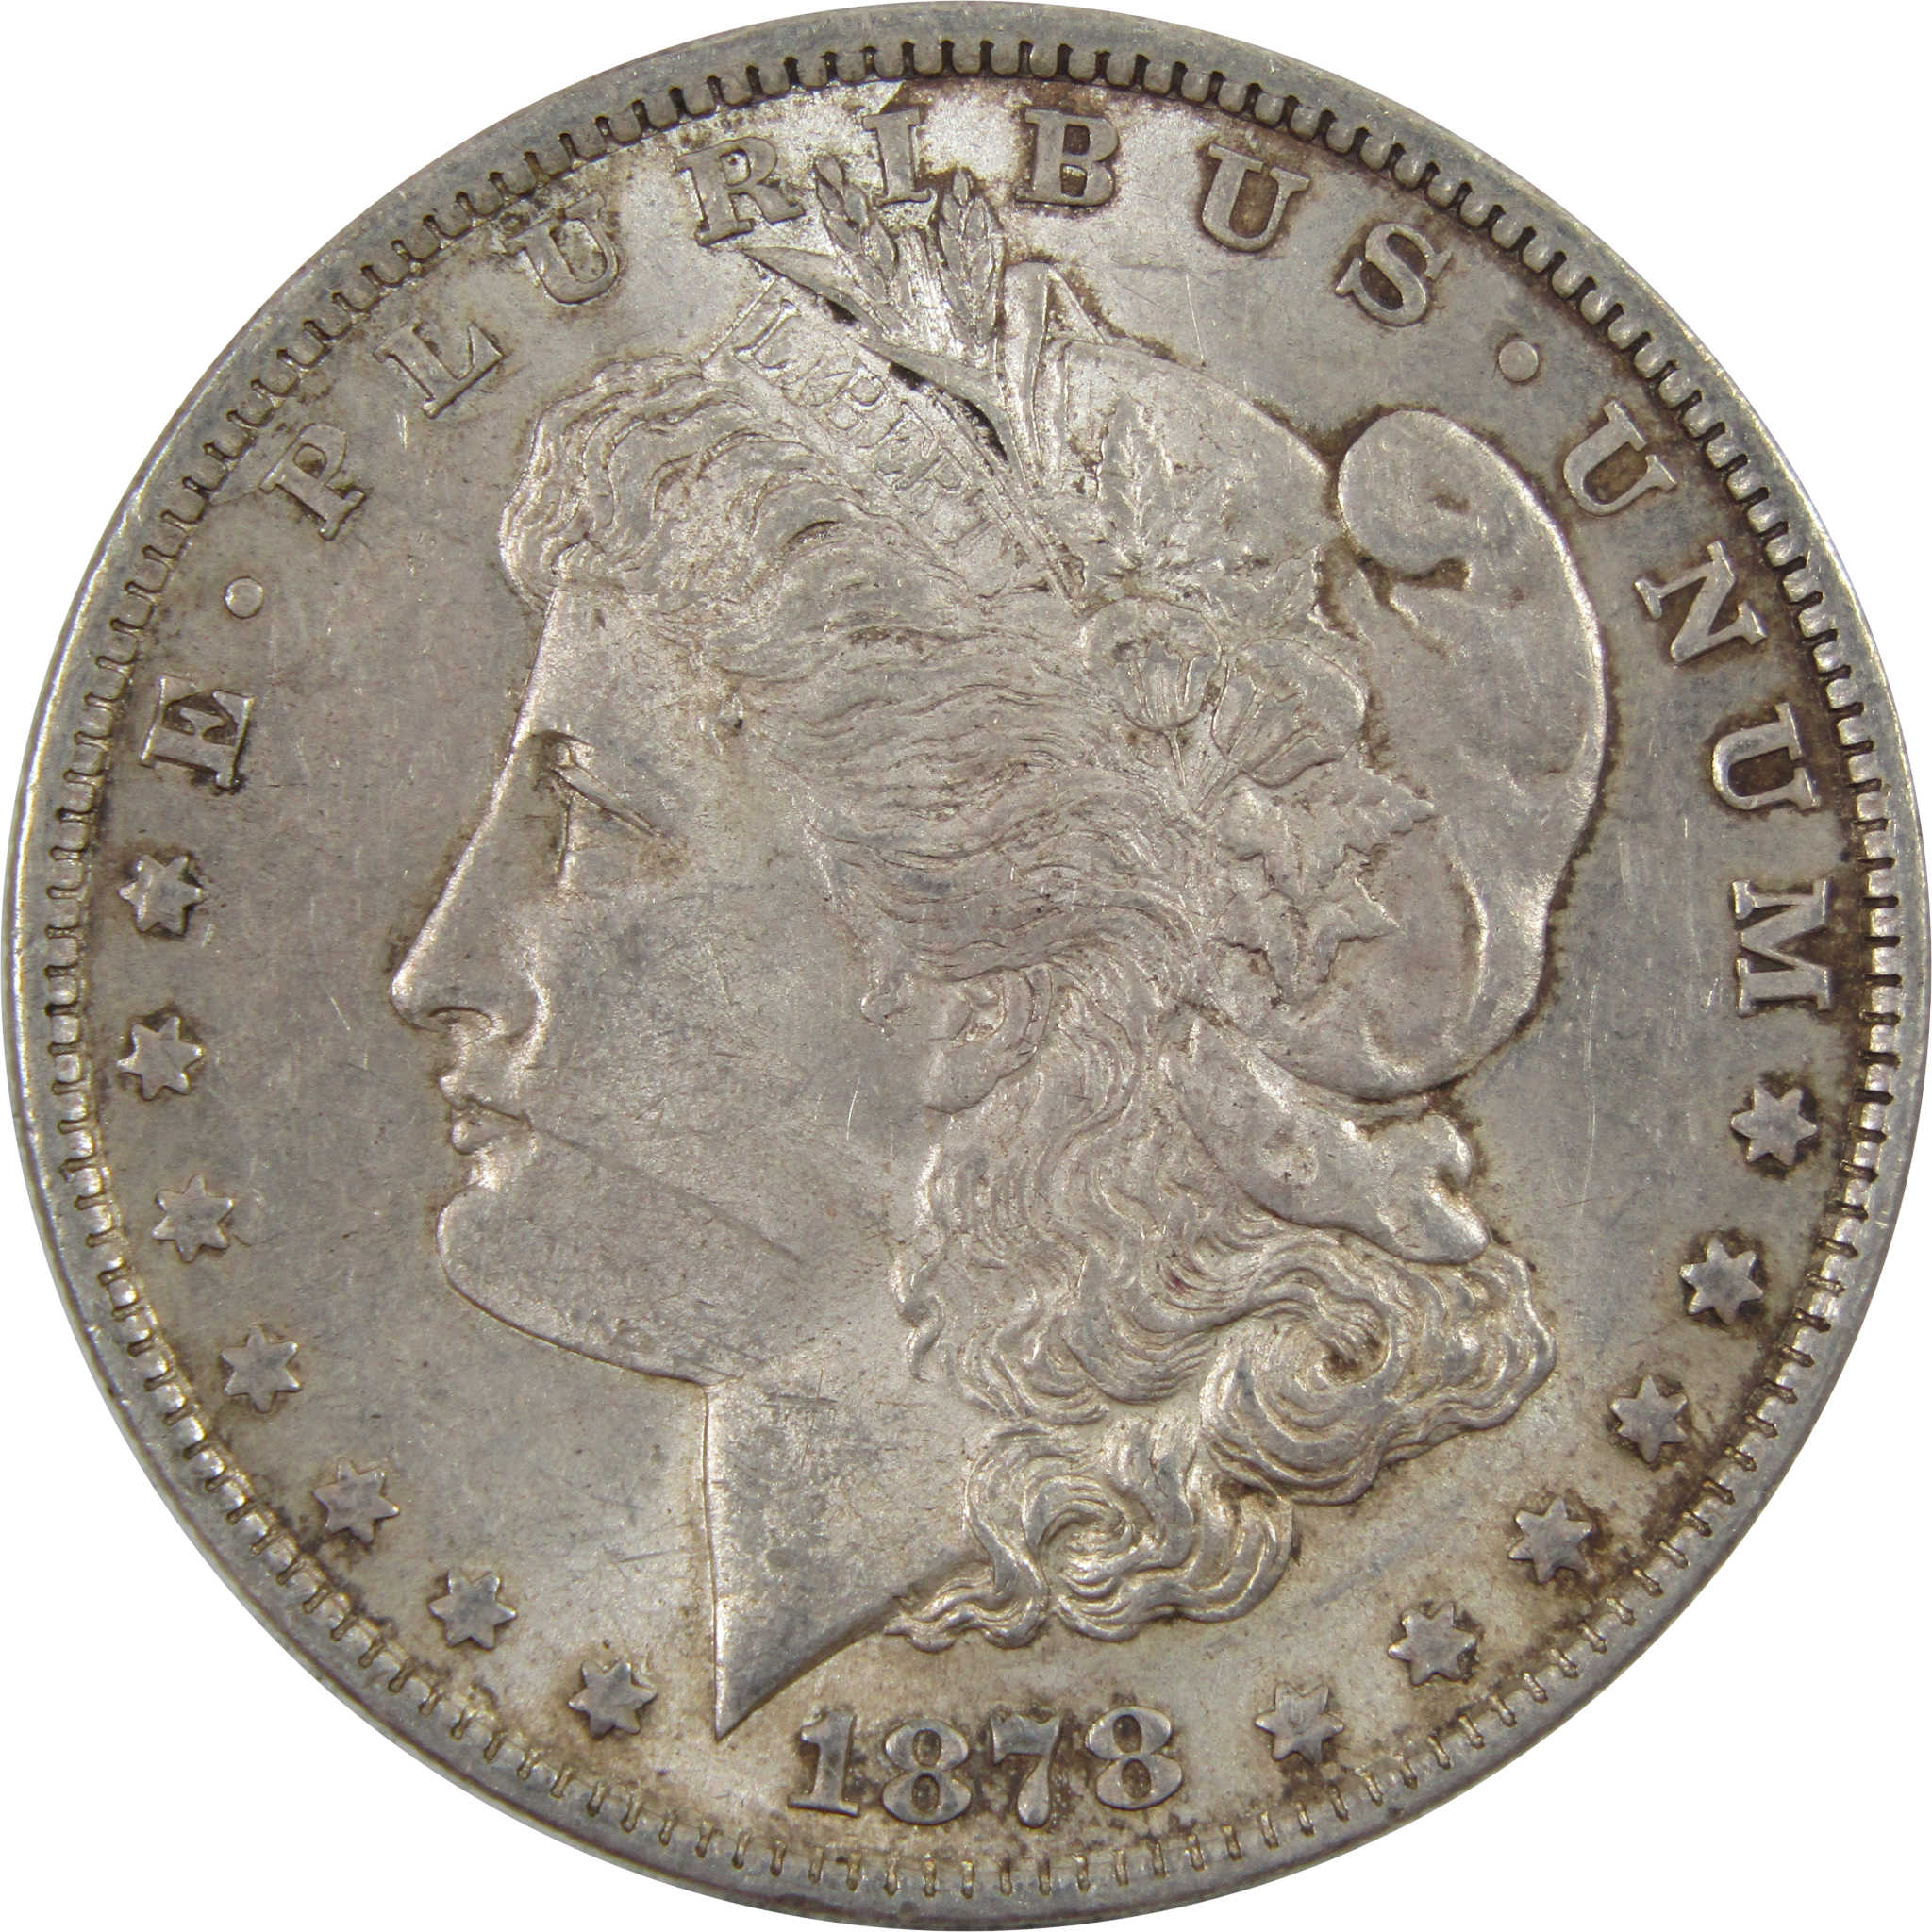 1878 7TF Rev 79 Morgan Dollar Borderline Uncirculated Silver SKU:I5119 - Morgan coin - Morgan silver dollar - Morgan silver dollar for sale - Profile Coins &amp; Collectibles